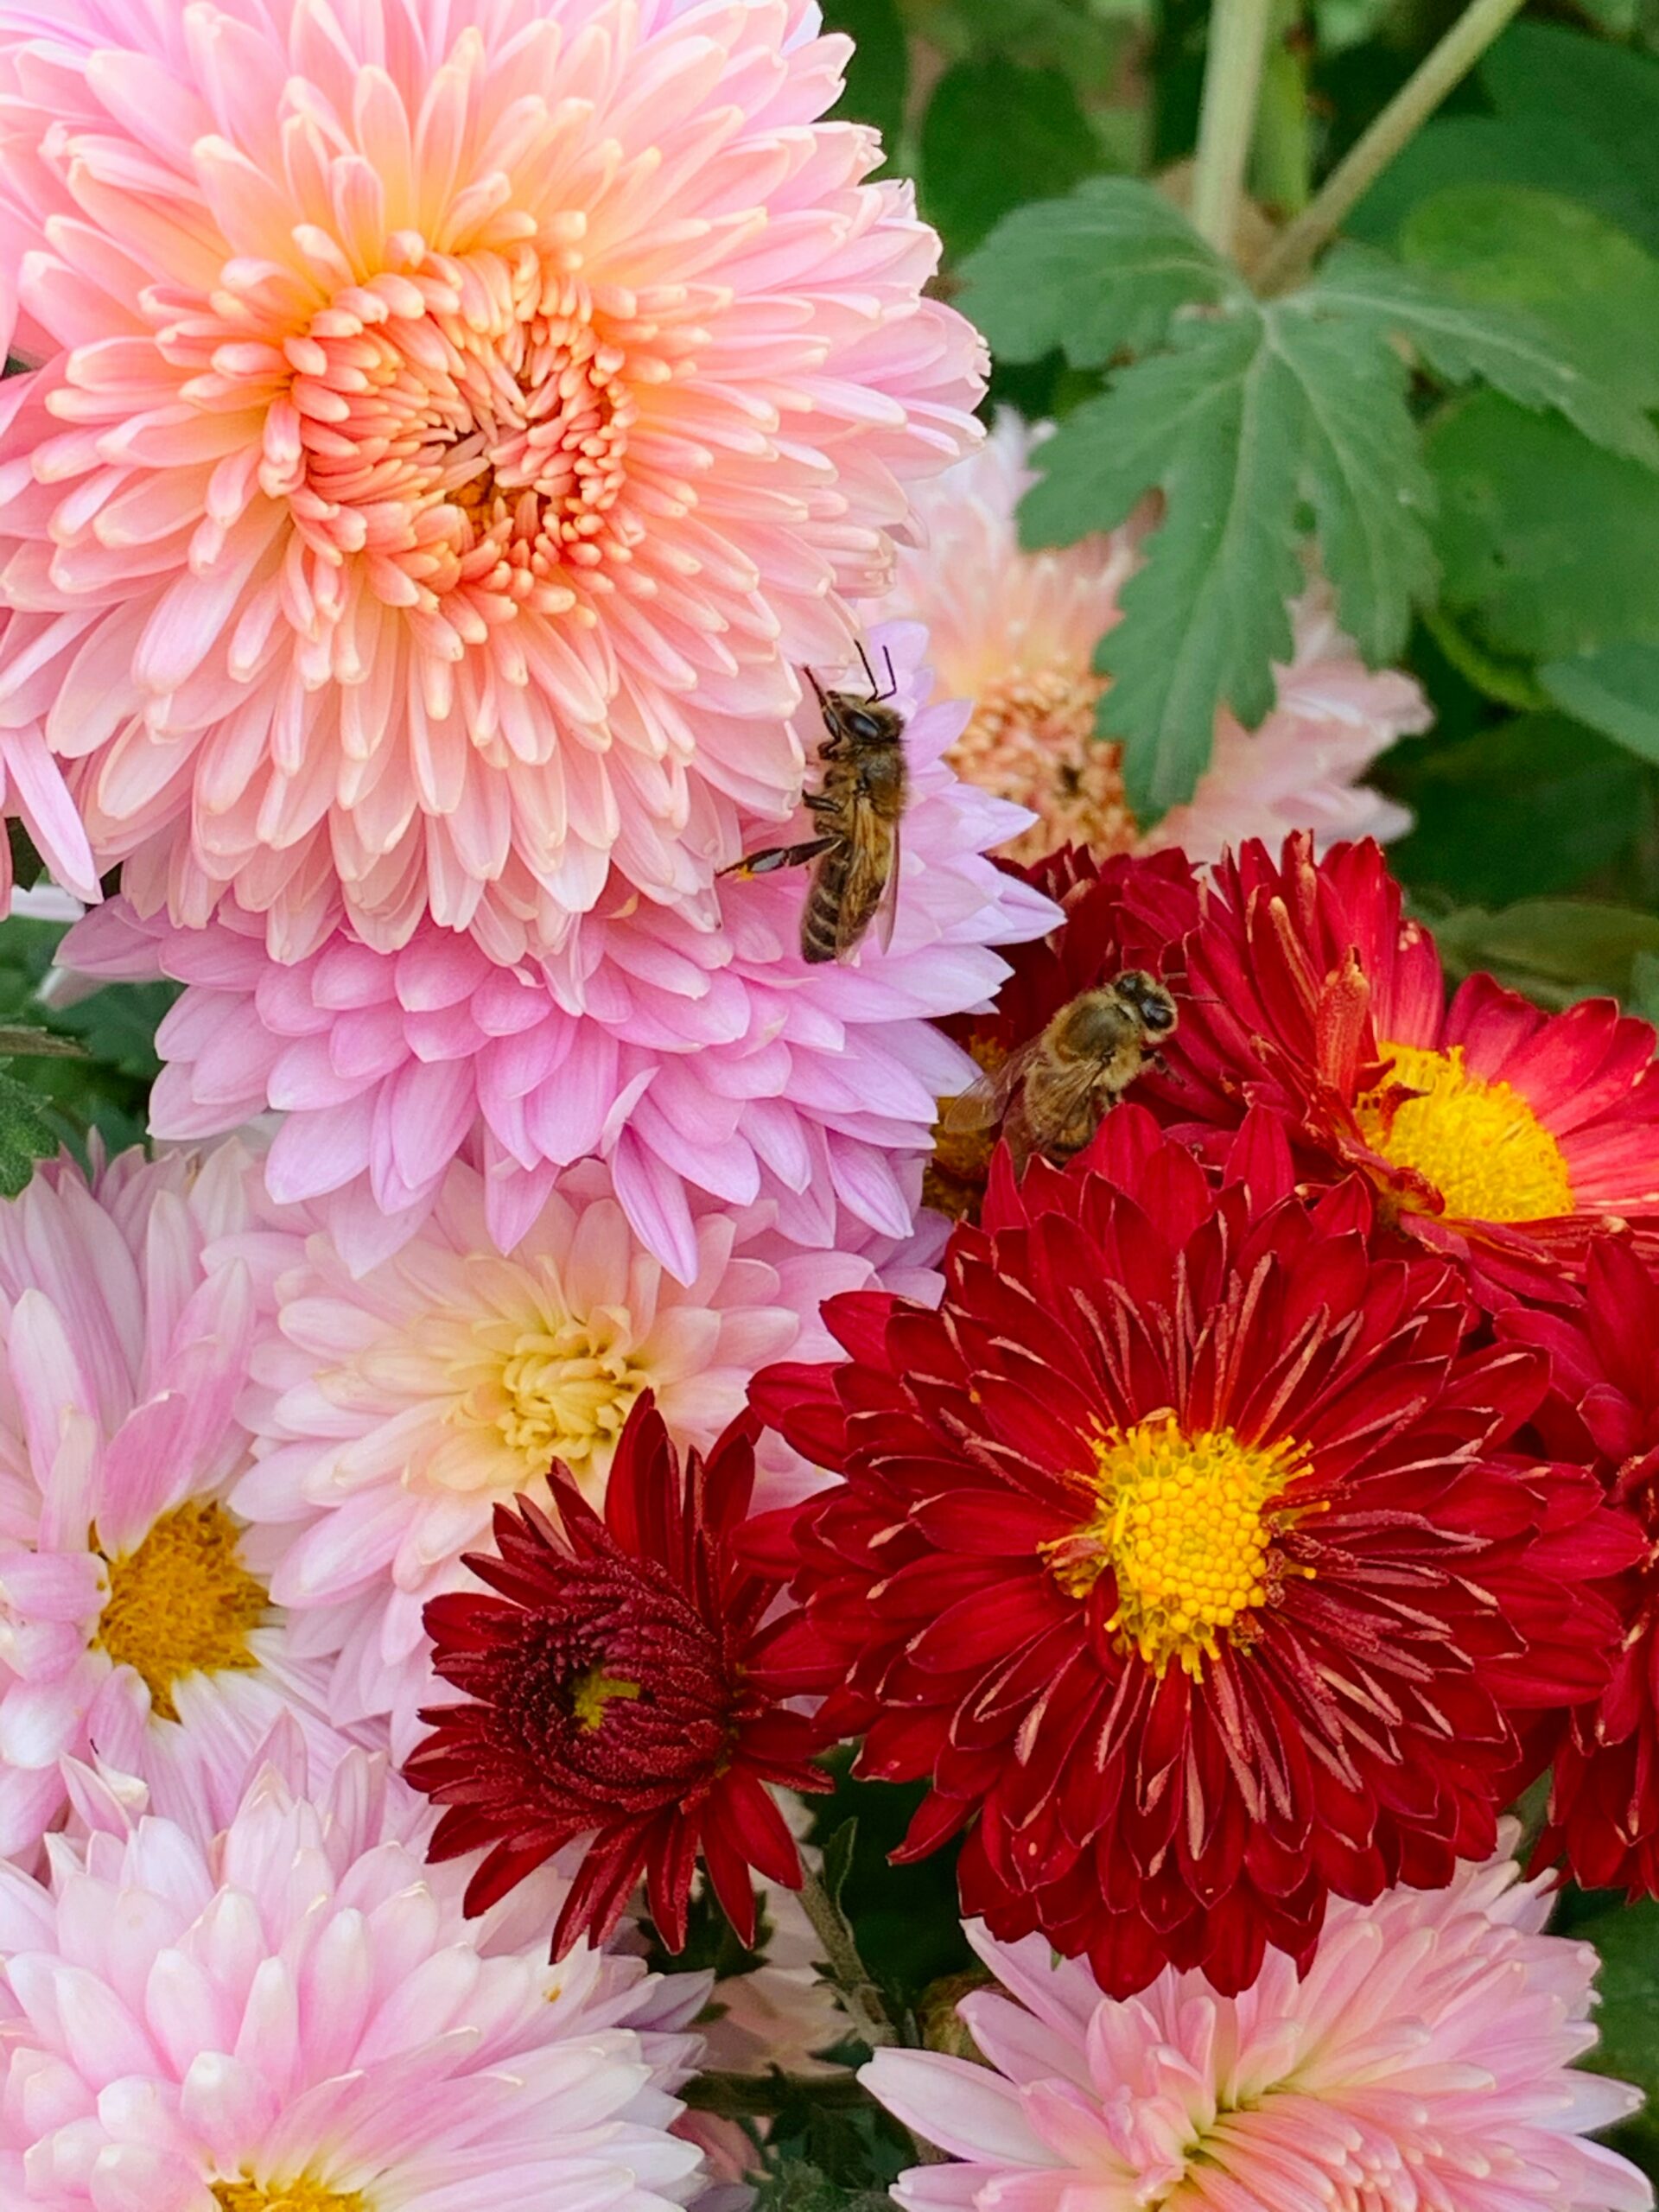 אינפוגרפיקה הממחישה את הירידה באוכלוסיית הדבורים העולמית בעשורים האחרונים.